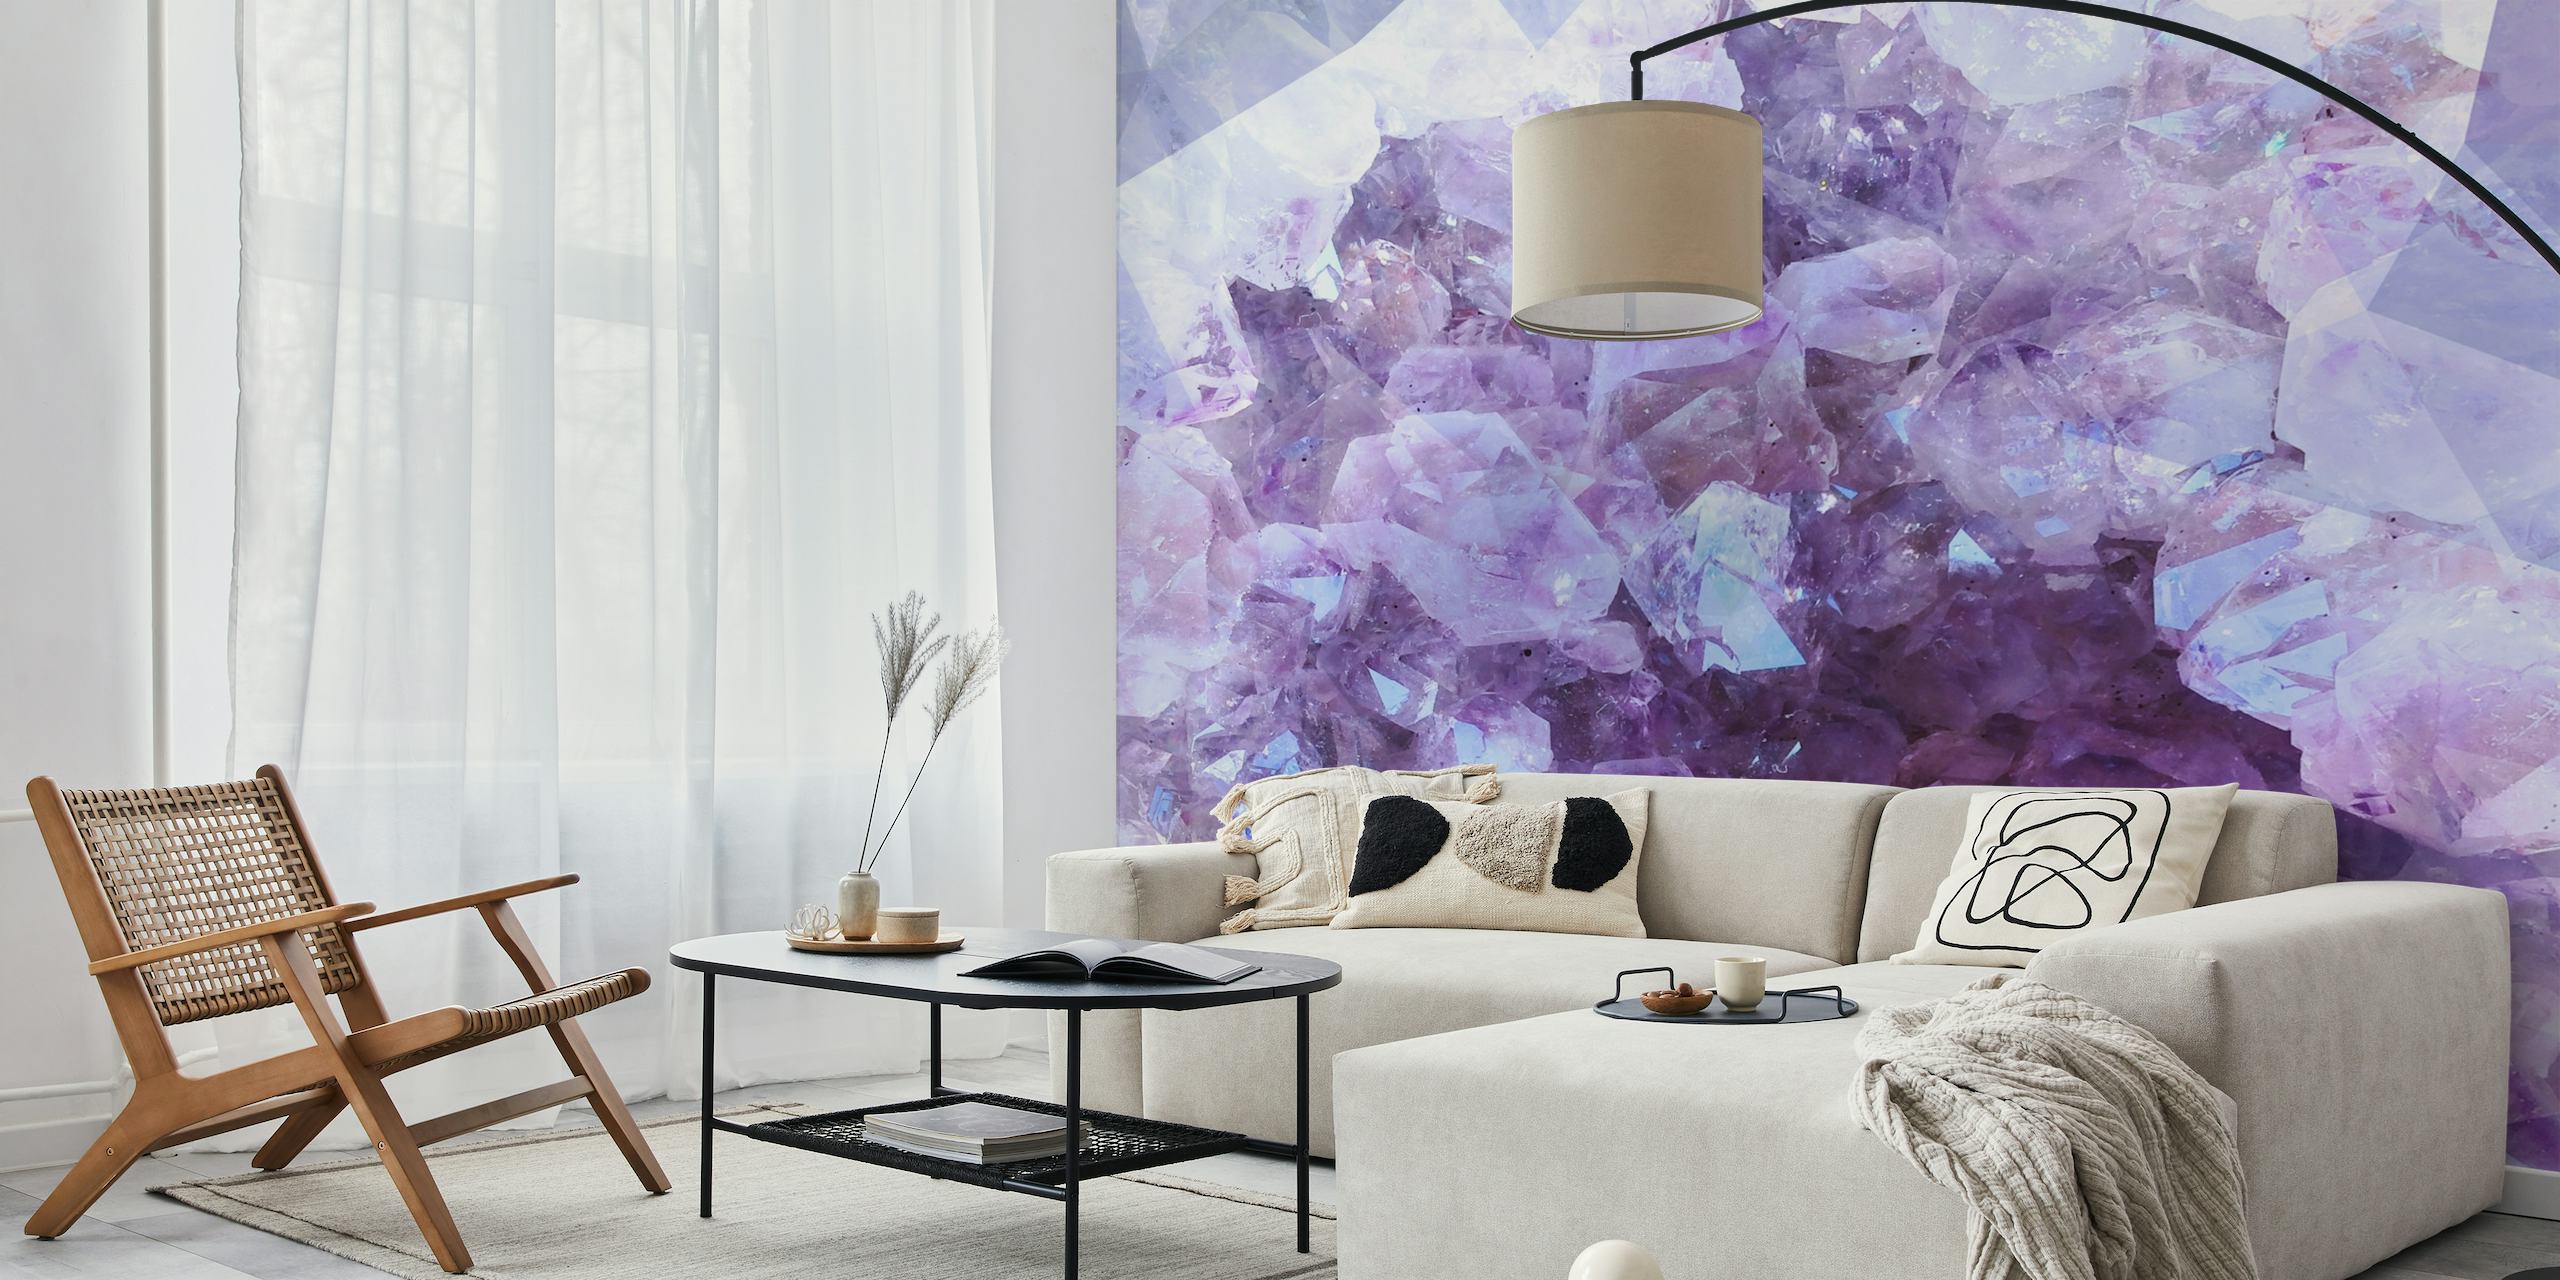 Veggmaleri med ultrafiolette krystaller med nyanser av lilla, hvitt og blått, som ligner naturlige ametystklynger.